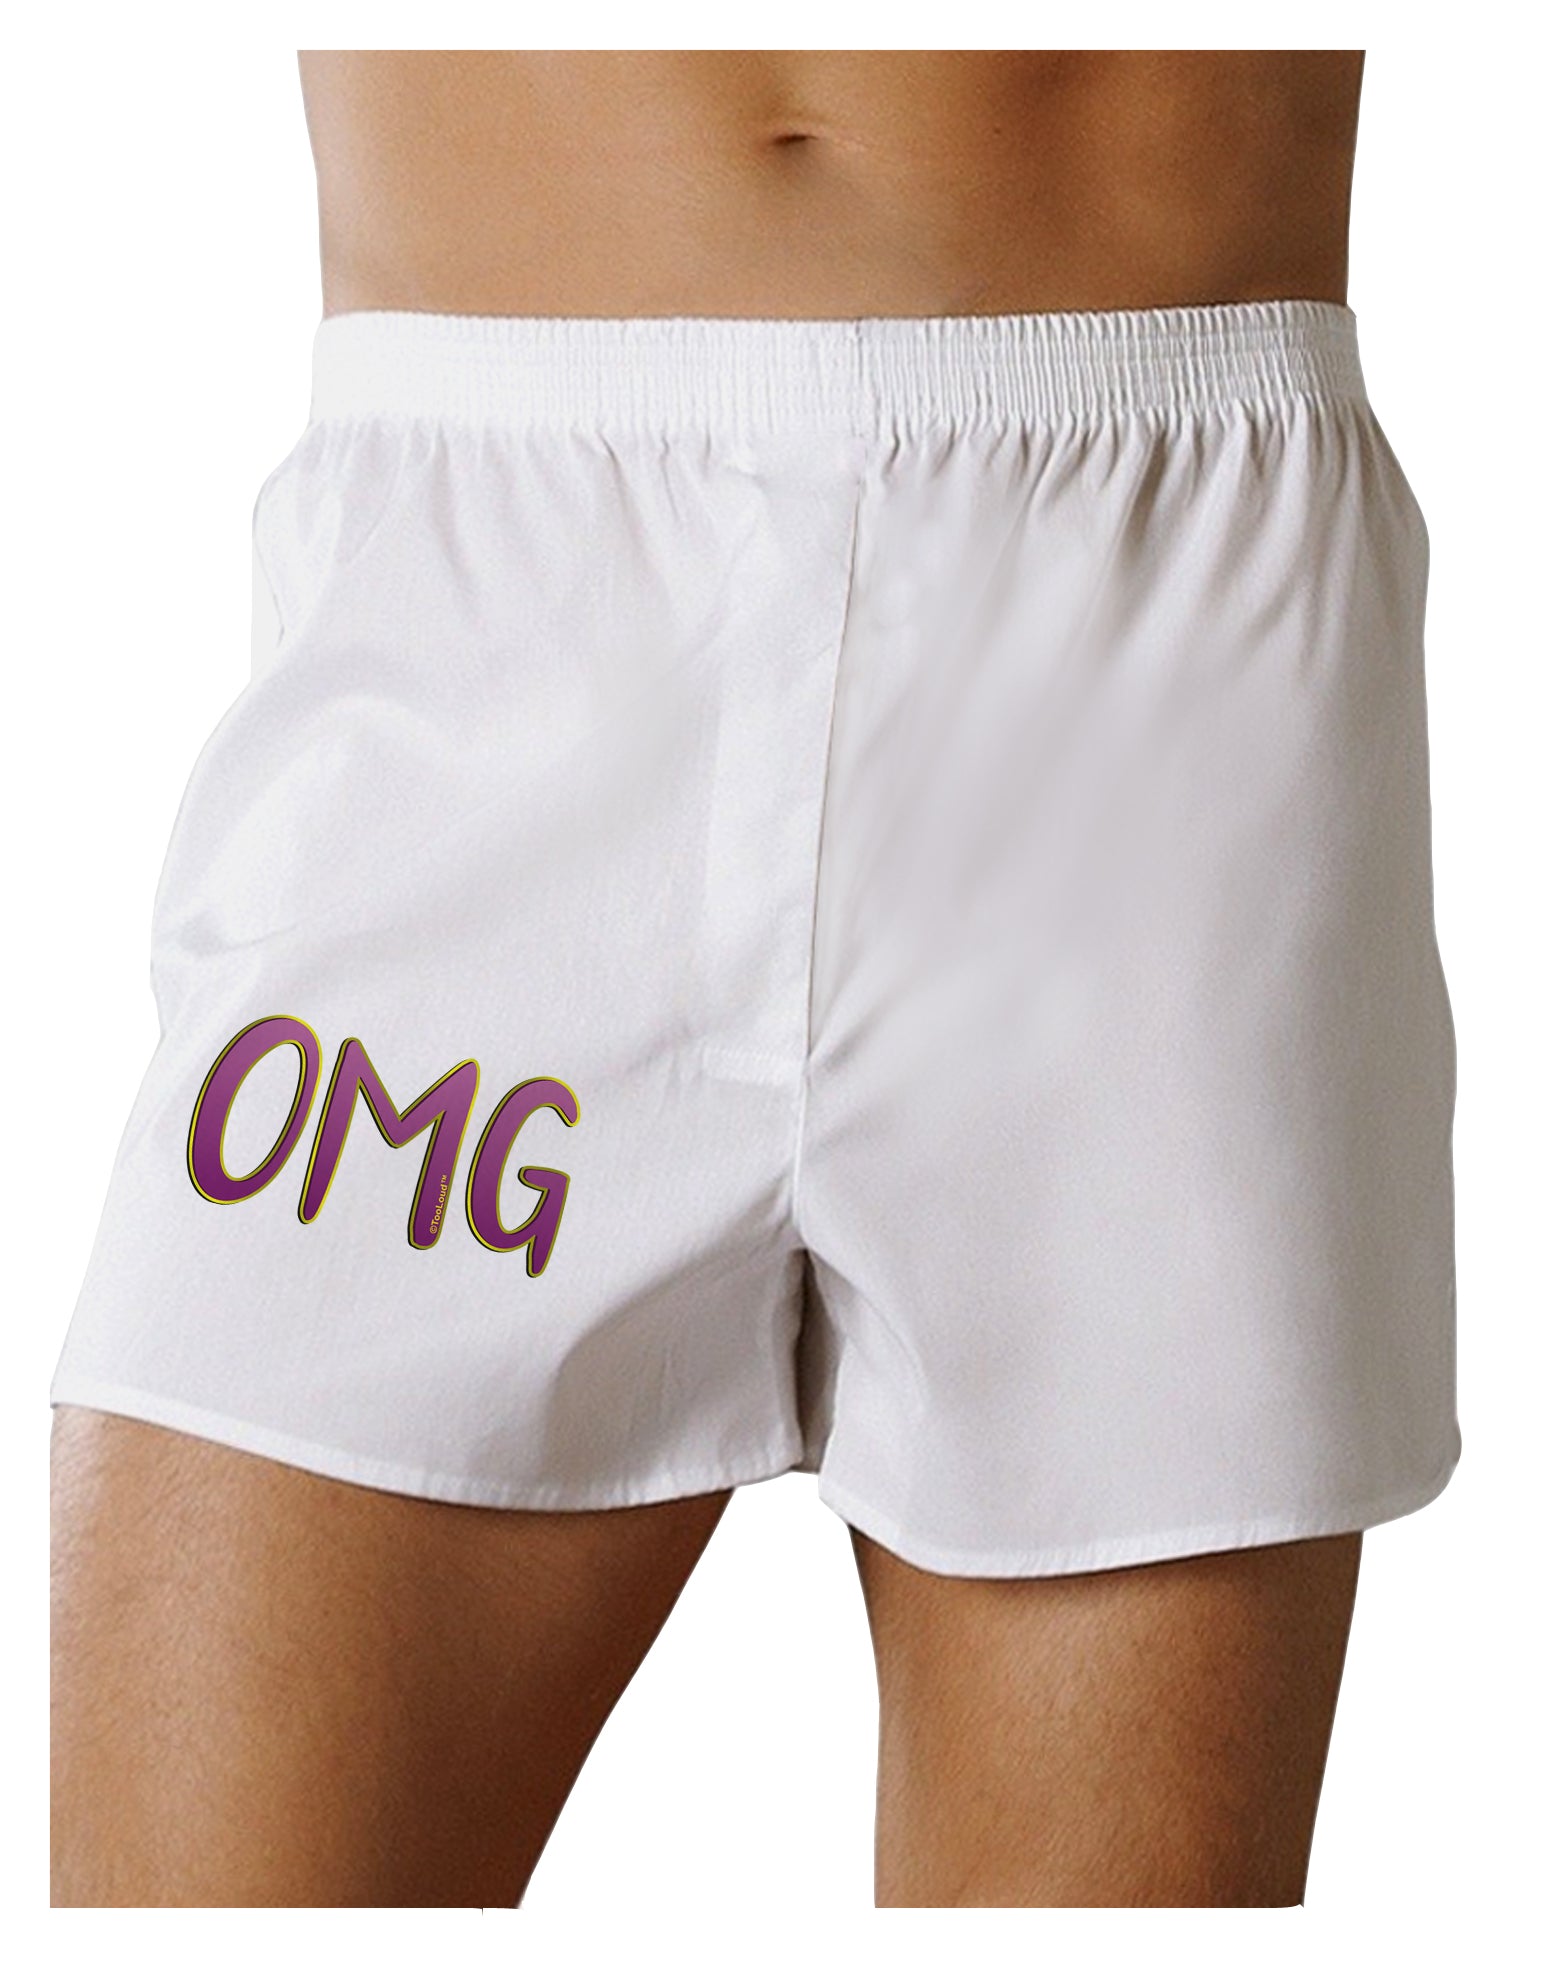 OMG Boxer Shorts by TooLoud - Davson Sales